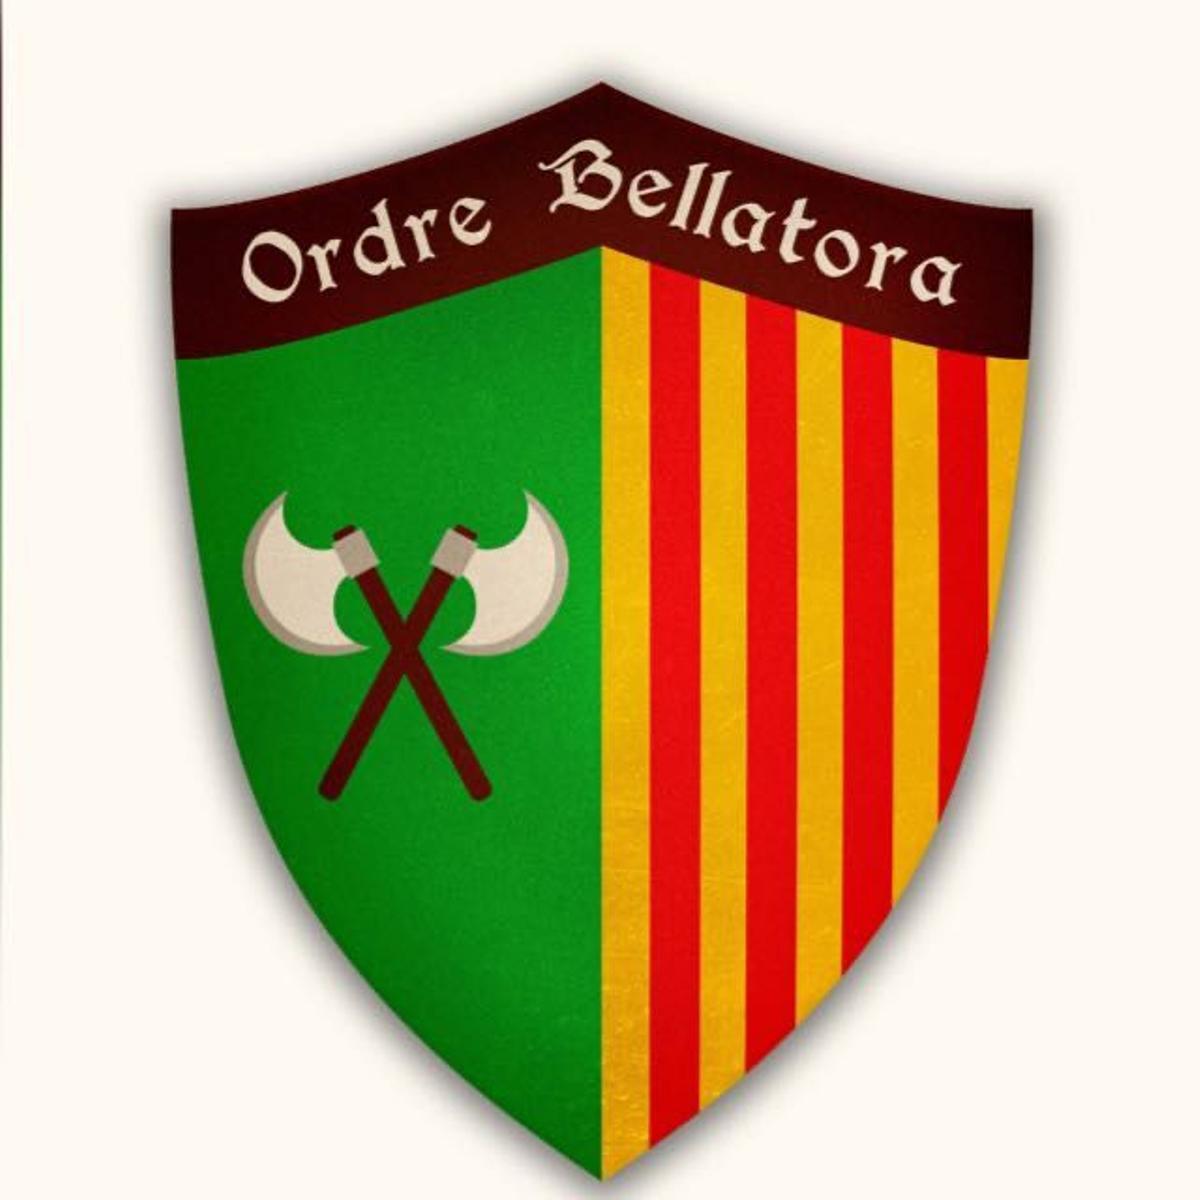 Escudo de l'Ordre Bellatora de la Germandat dels Cavallers de la Conquesta.